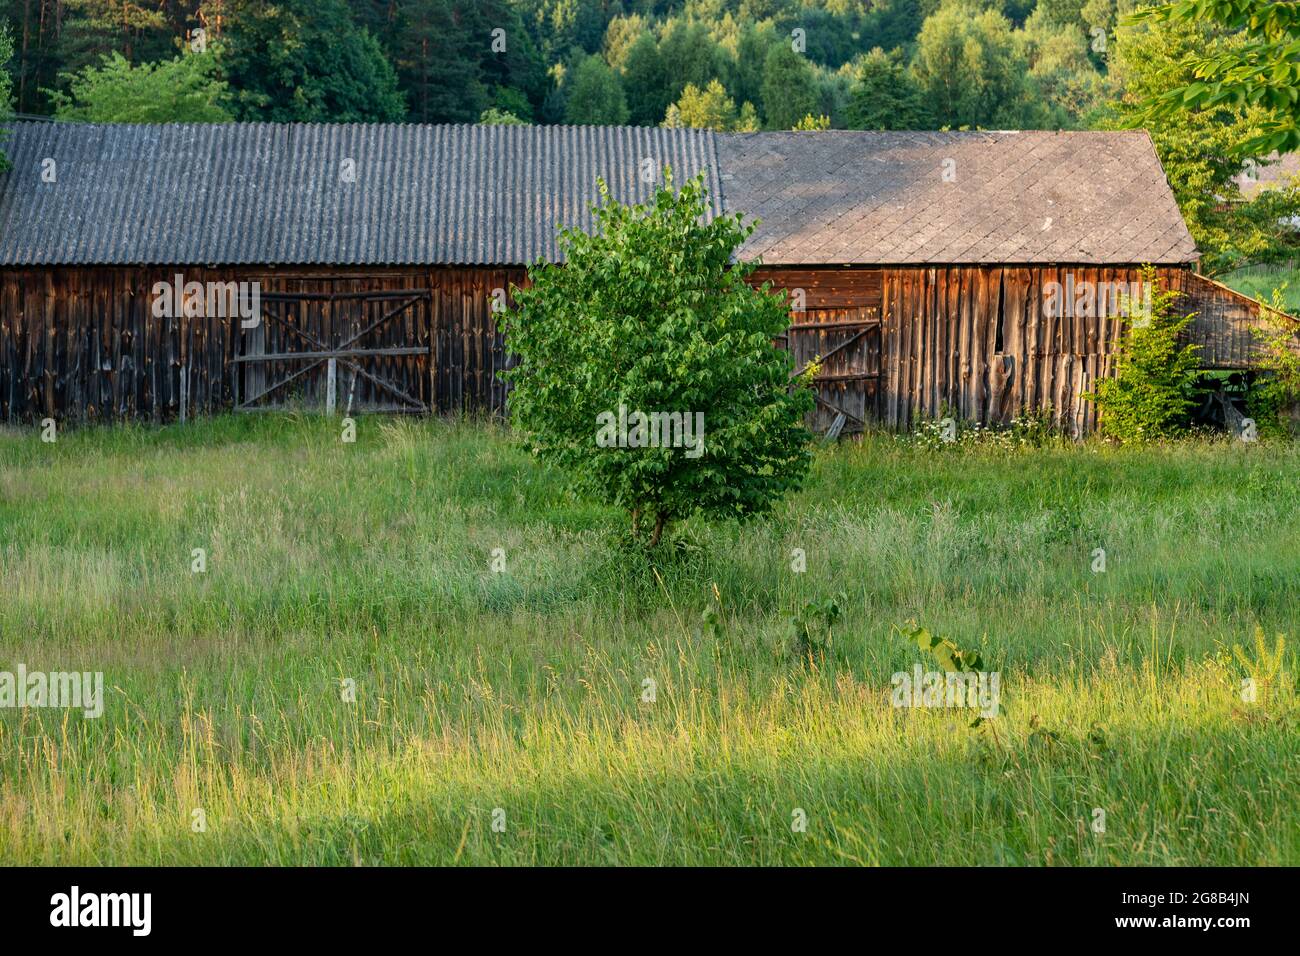 Alte, hölzerne Scheune zwischen grünen Bäumen, auf einer Wiese. Wald im Hintergrund. Krasnobród, Roztocze, Polen. Stockfoto